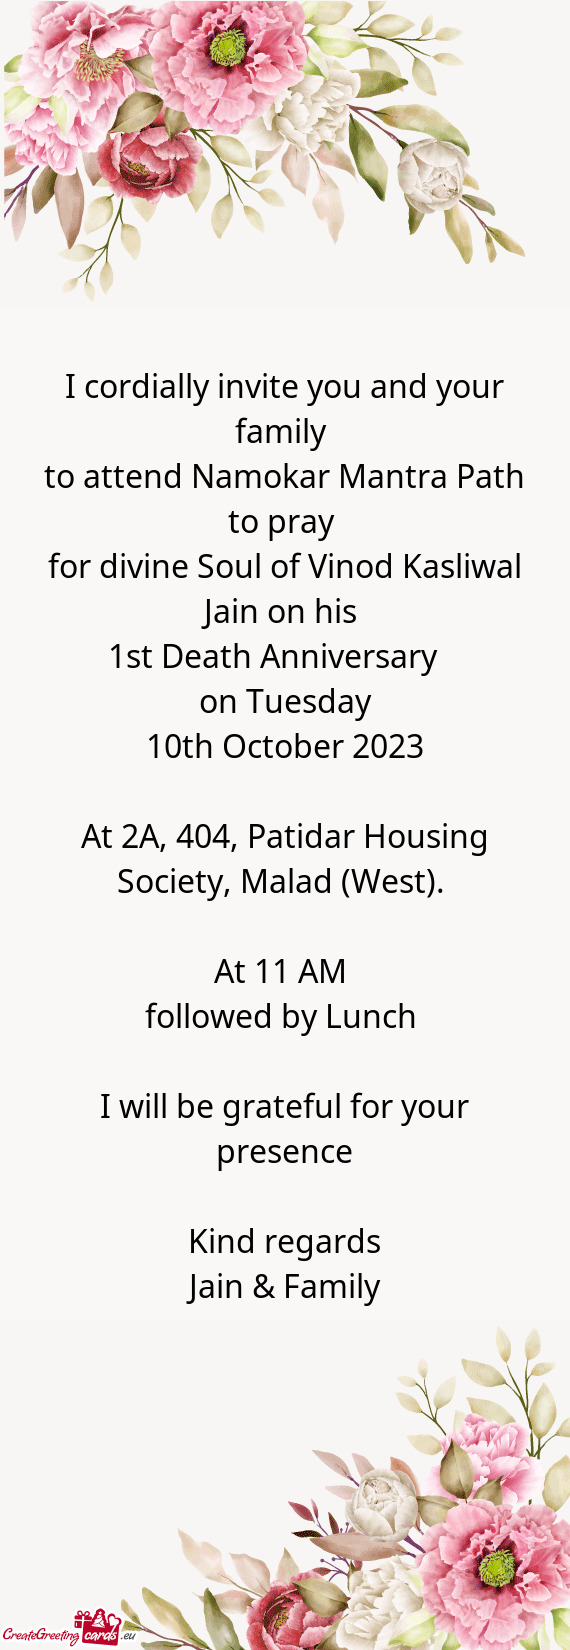 For divine Soul of Vinod Kasliwal Jain on his